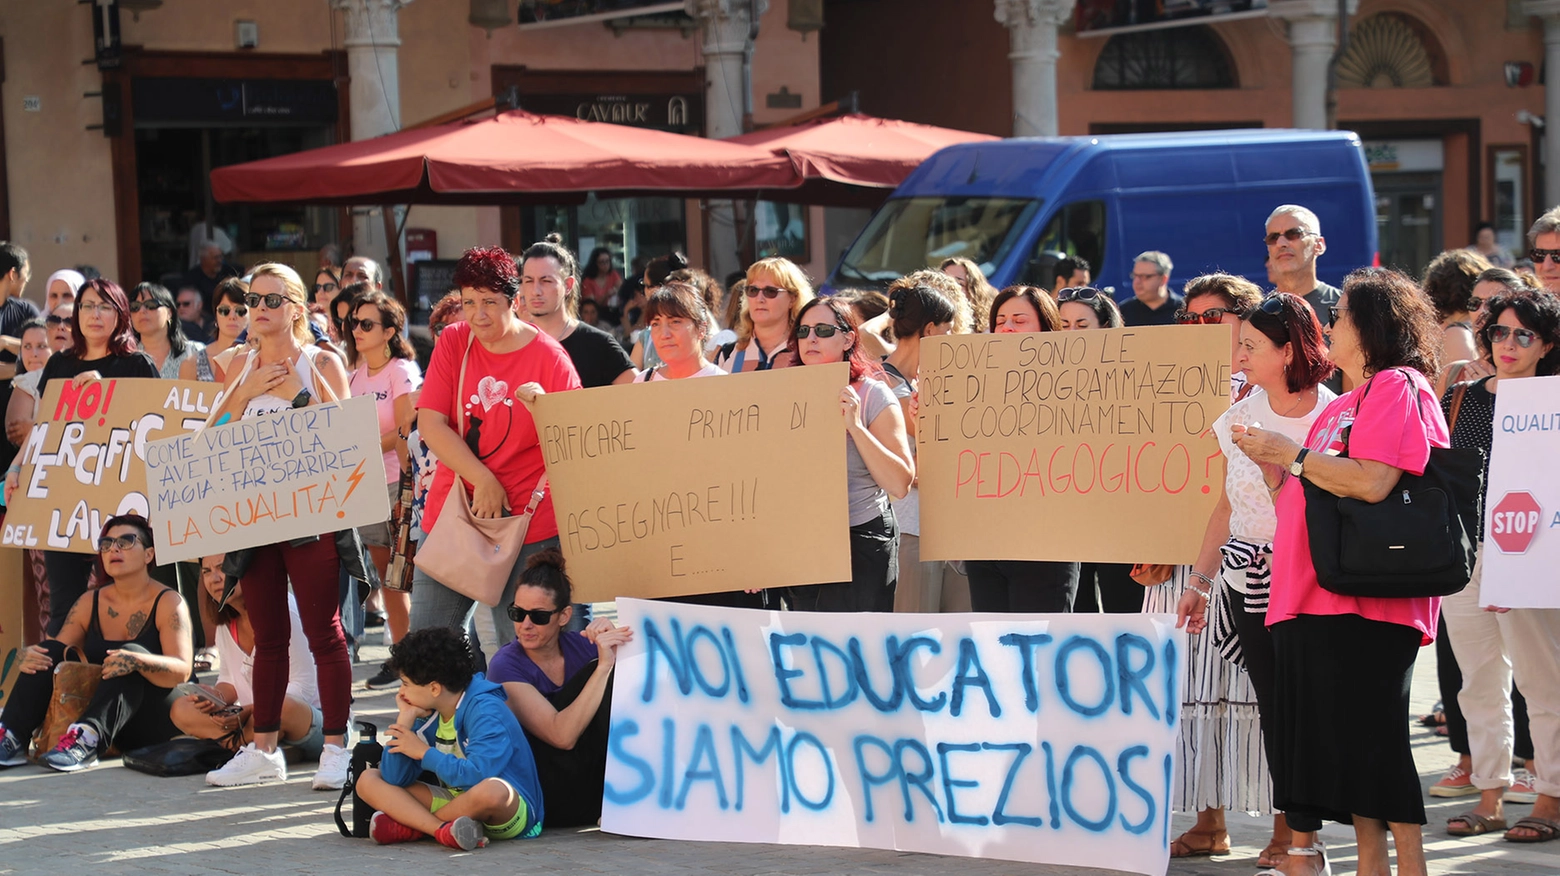 La protesta delle educatrici avvenuta nel settembre 2022